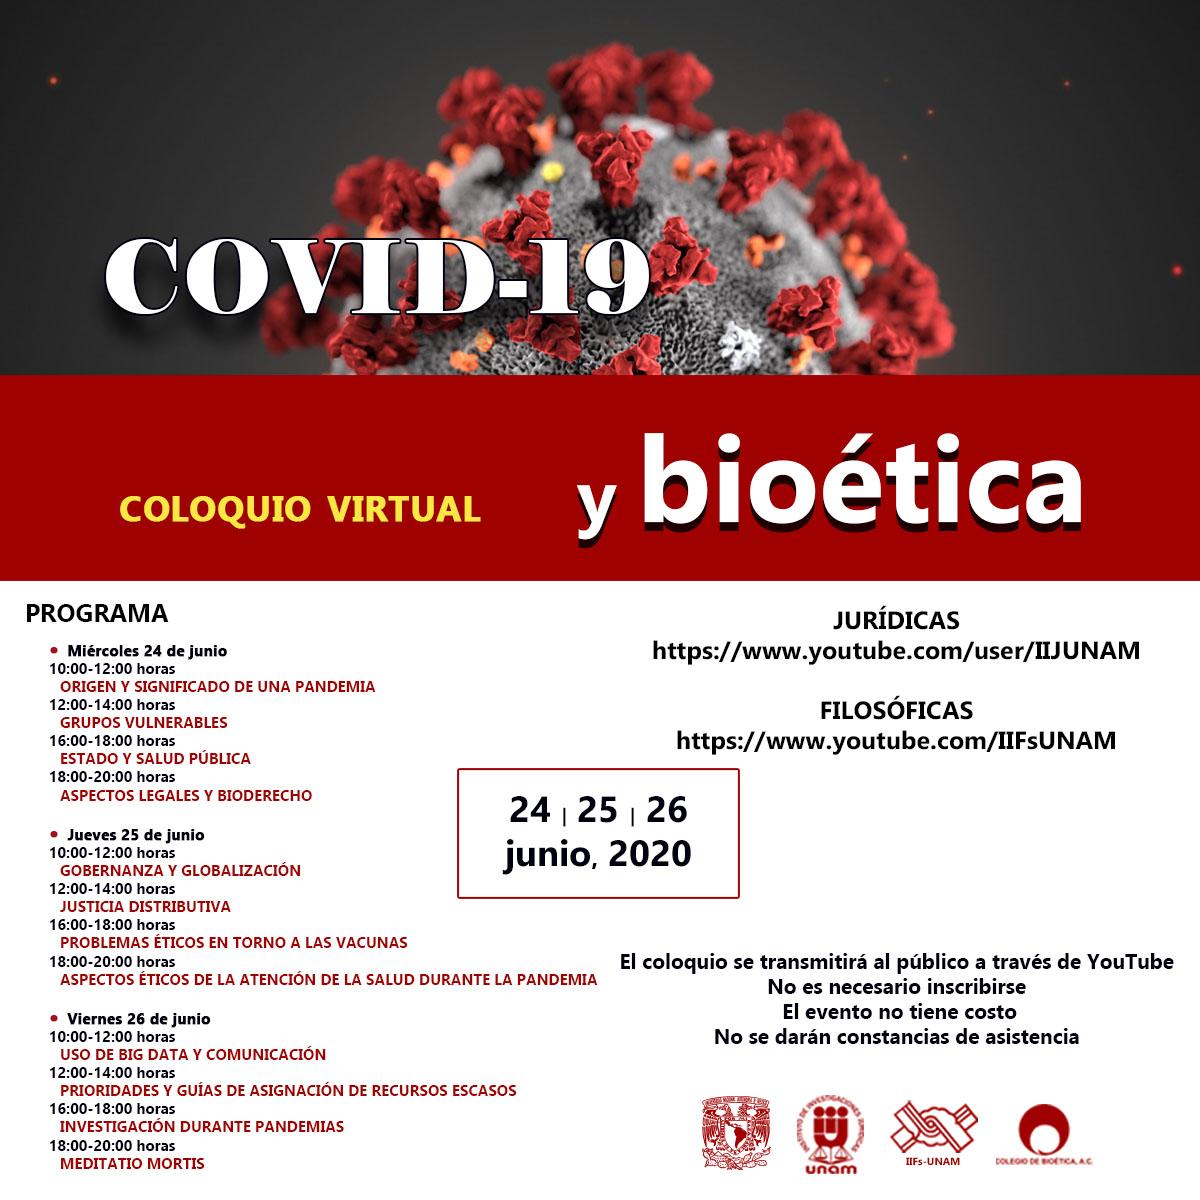 Coloquio virtual COVID-19 y bioética